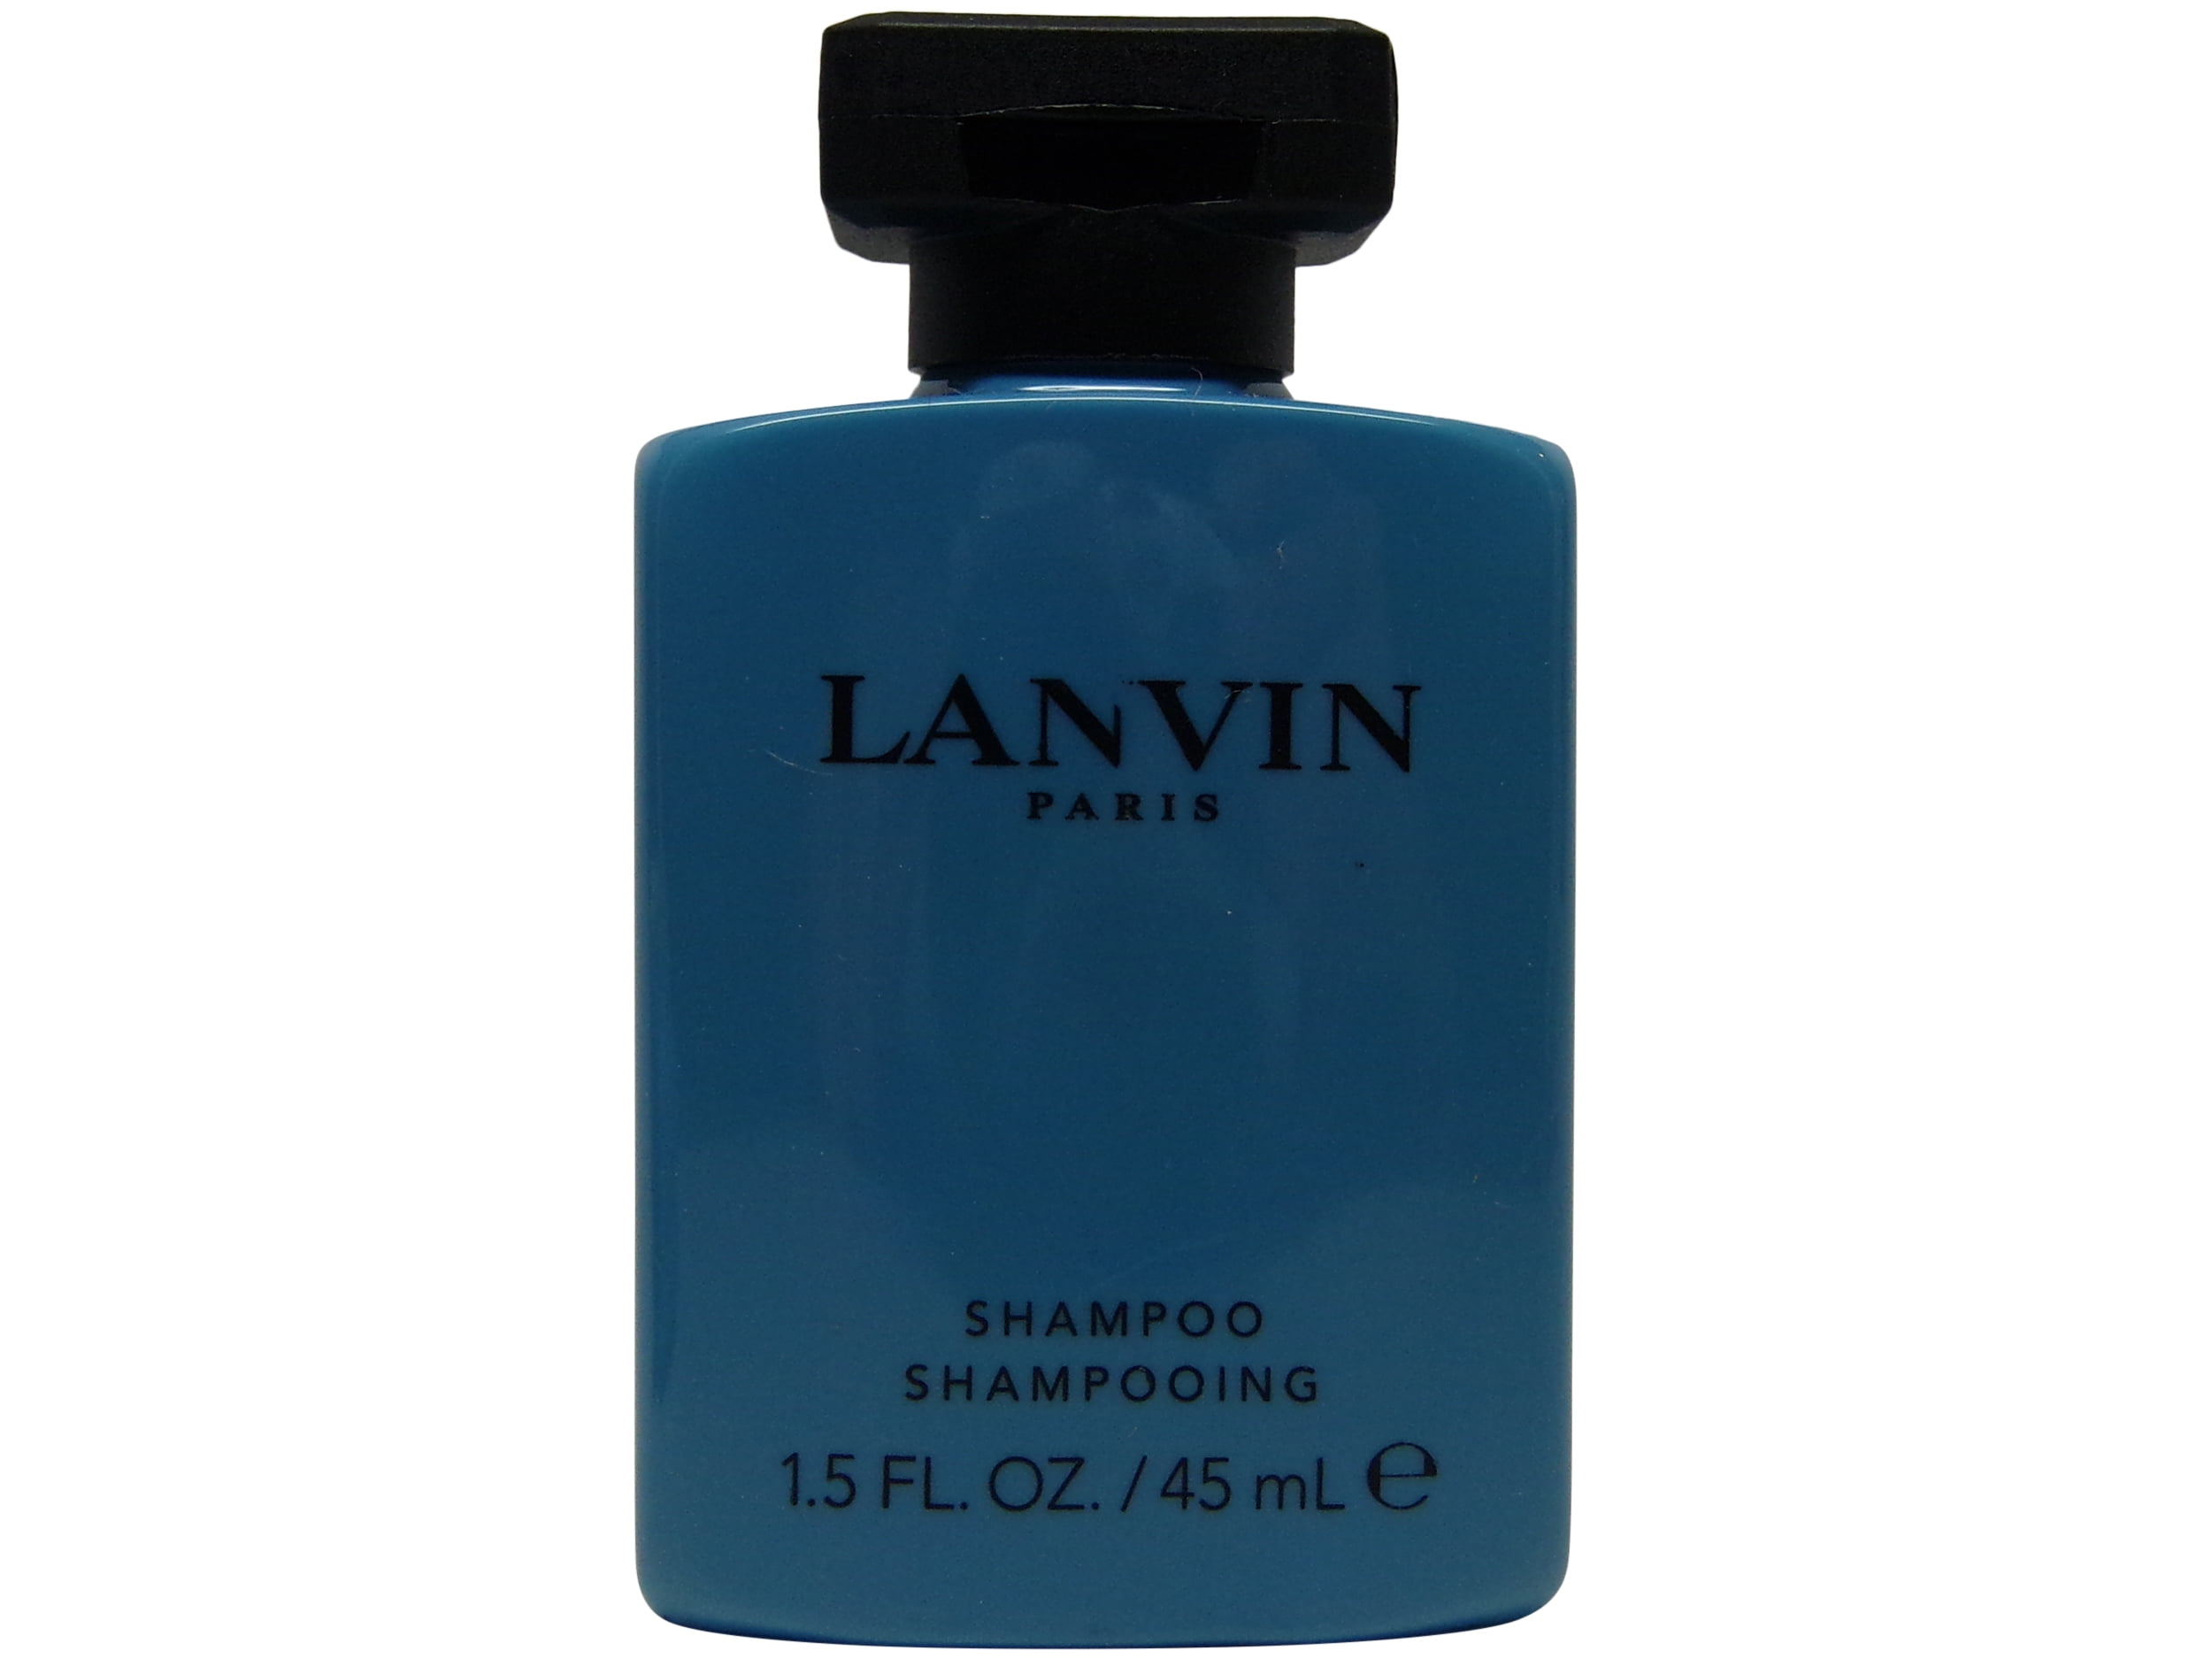 fælde uddrag Berri Les Notes de Lanvin Orange Ambre Shampoo & Conditioner Lot of 4(2 of Each)  - Walmart.com